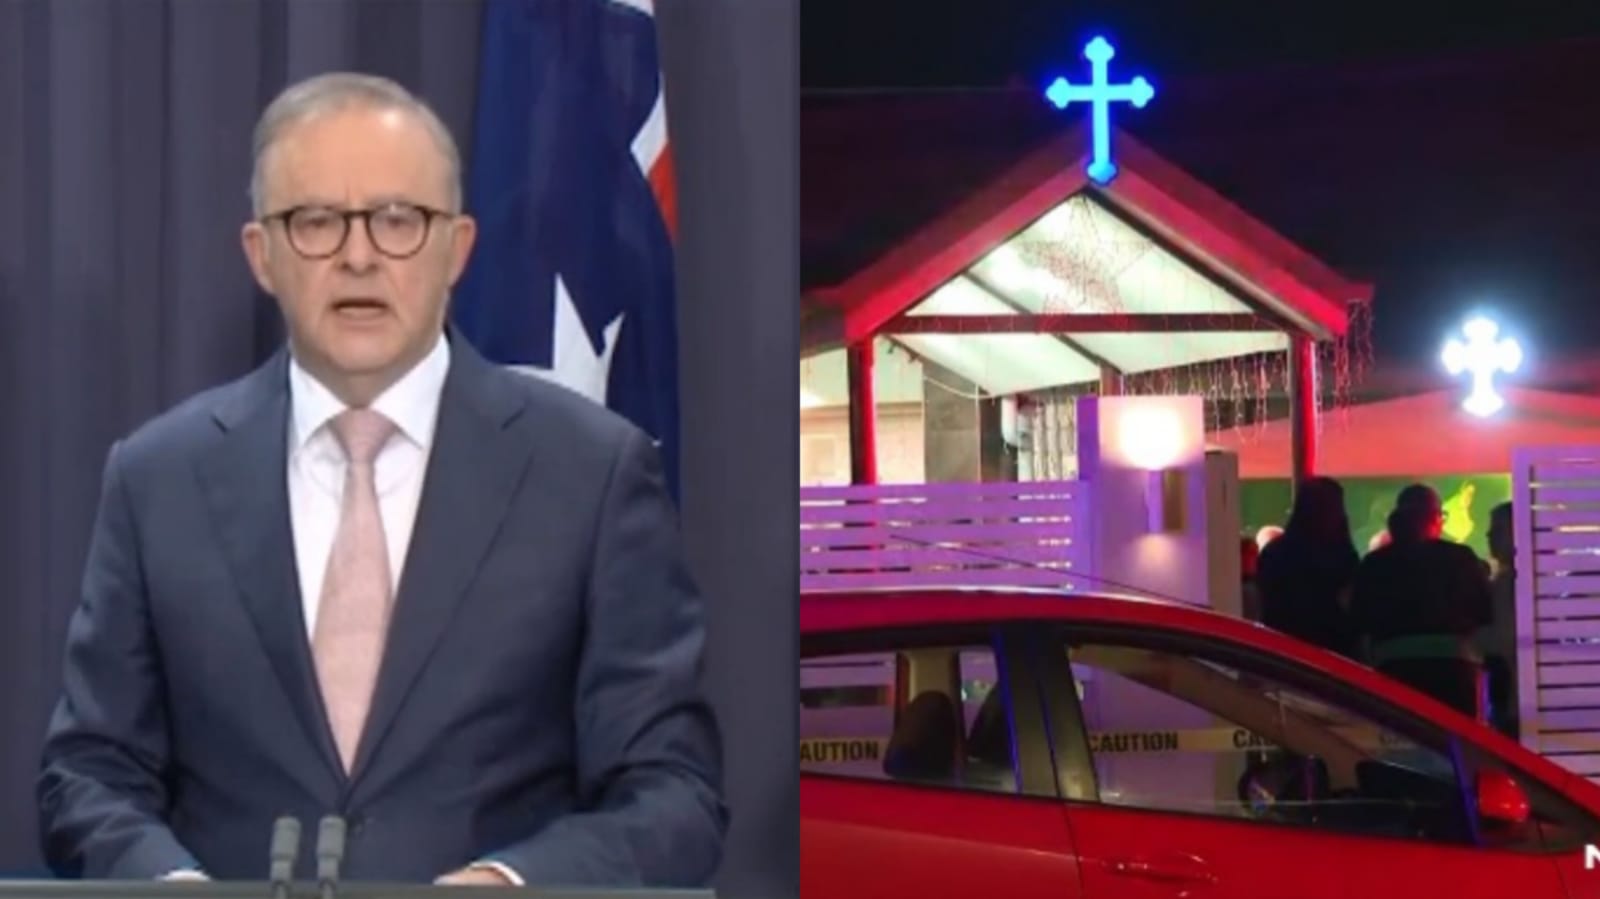 governo-da-australia-afirma-que-esfaqueamento-em-igreja-foi-“ataque-terrorista”